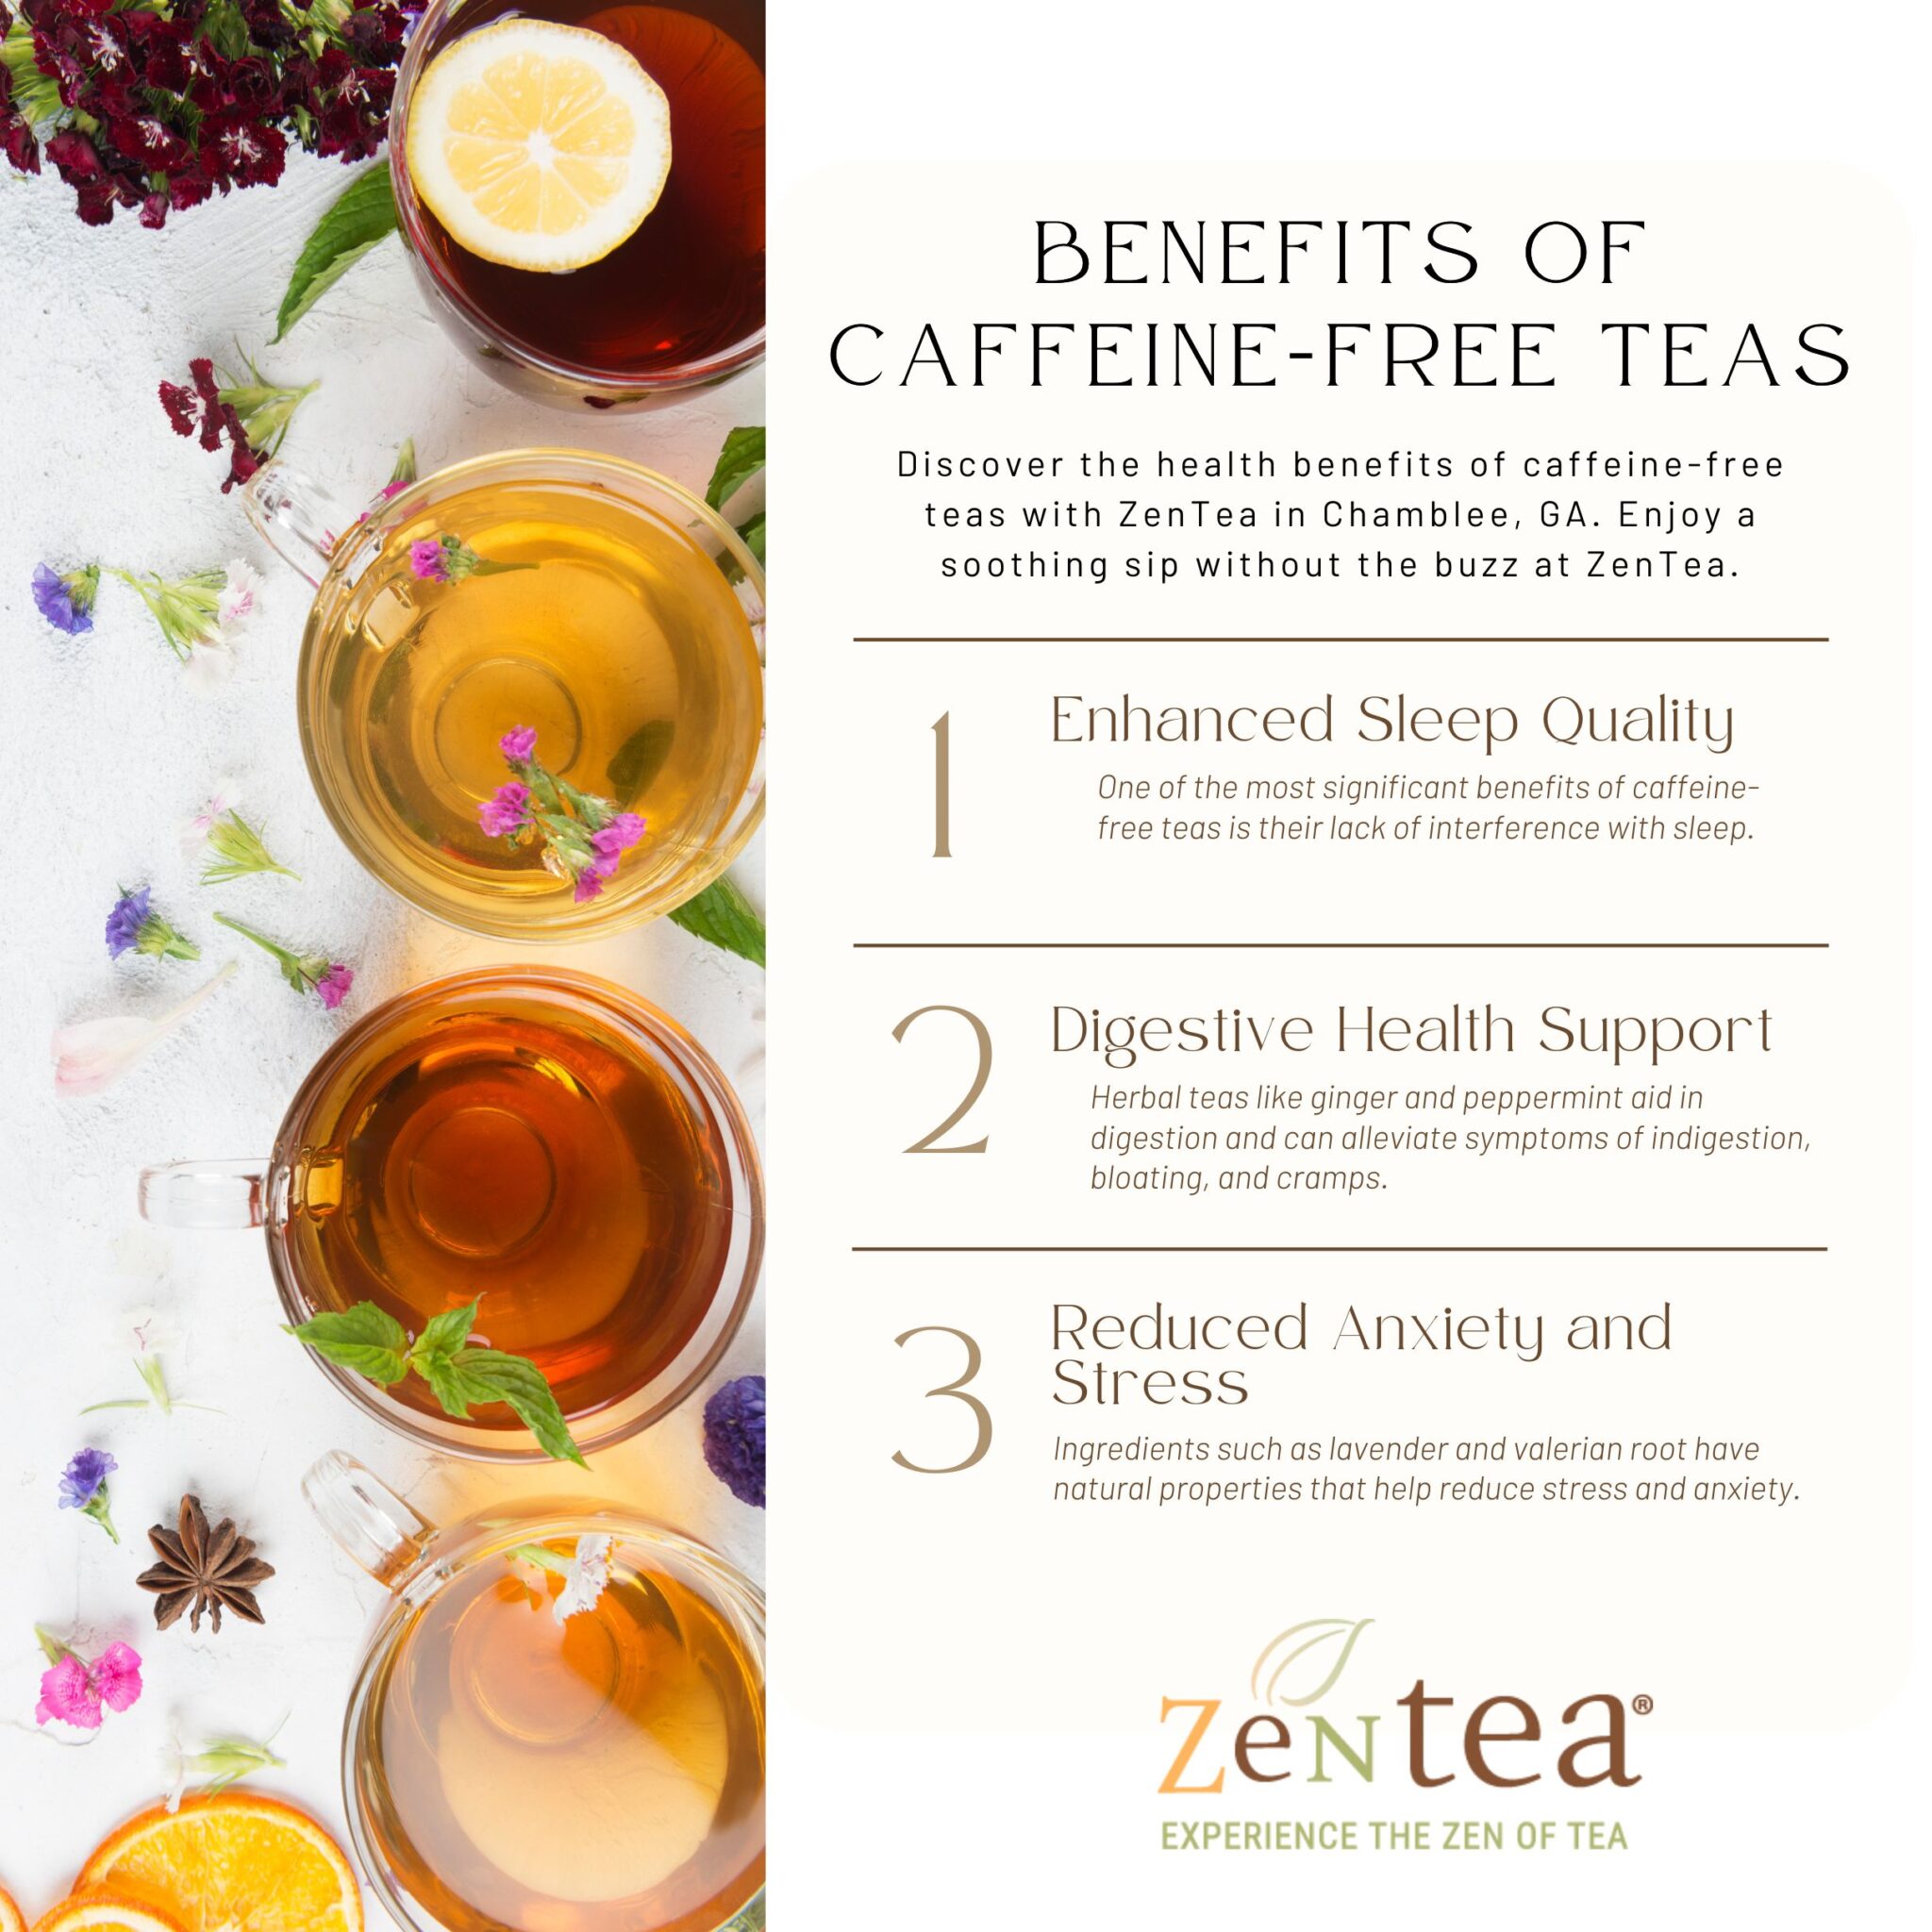 Benefits of Caffeine-Free Teas - Explore at ZenTea - ZenTea Retail